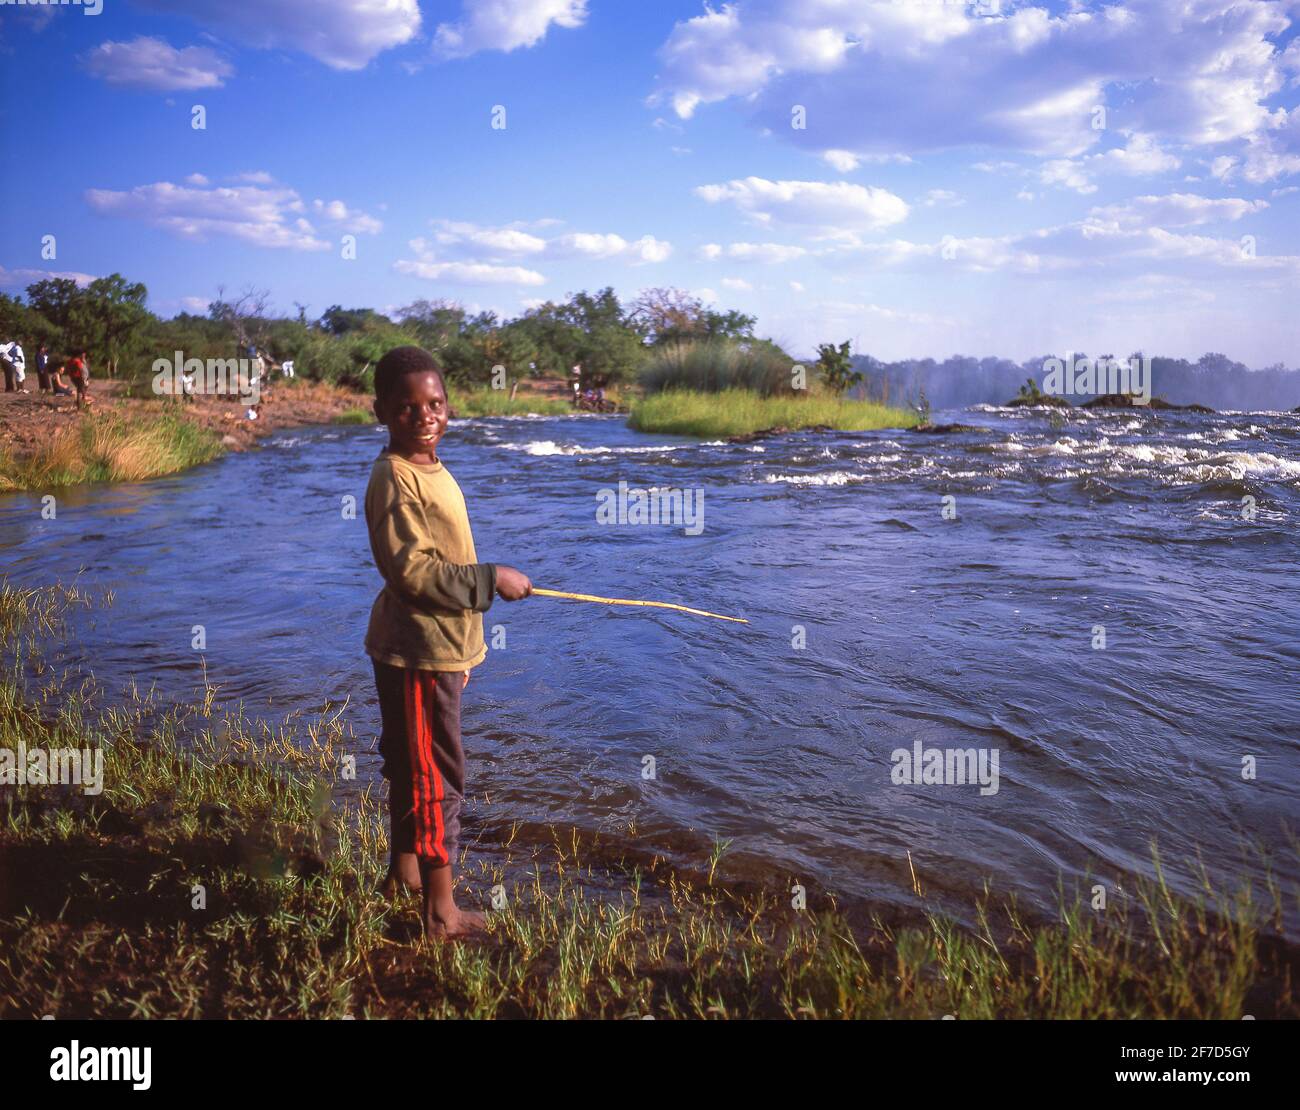 Boy fishing, Victoria Falls (Mosi-oa-Tunya), Livingstone, Southern Province, Zambia Stock Photo